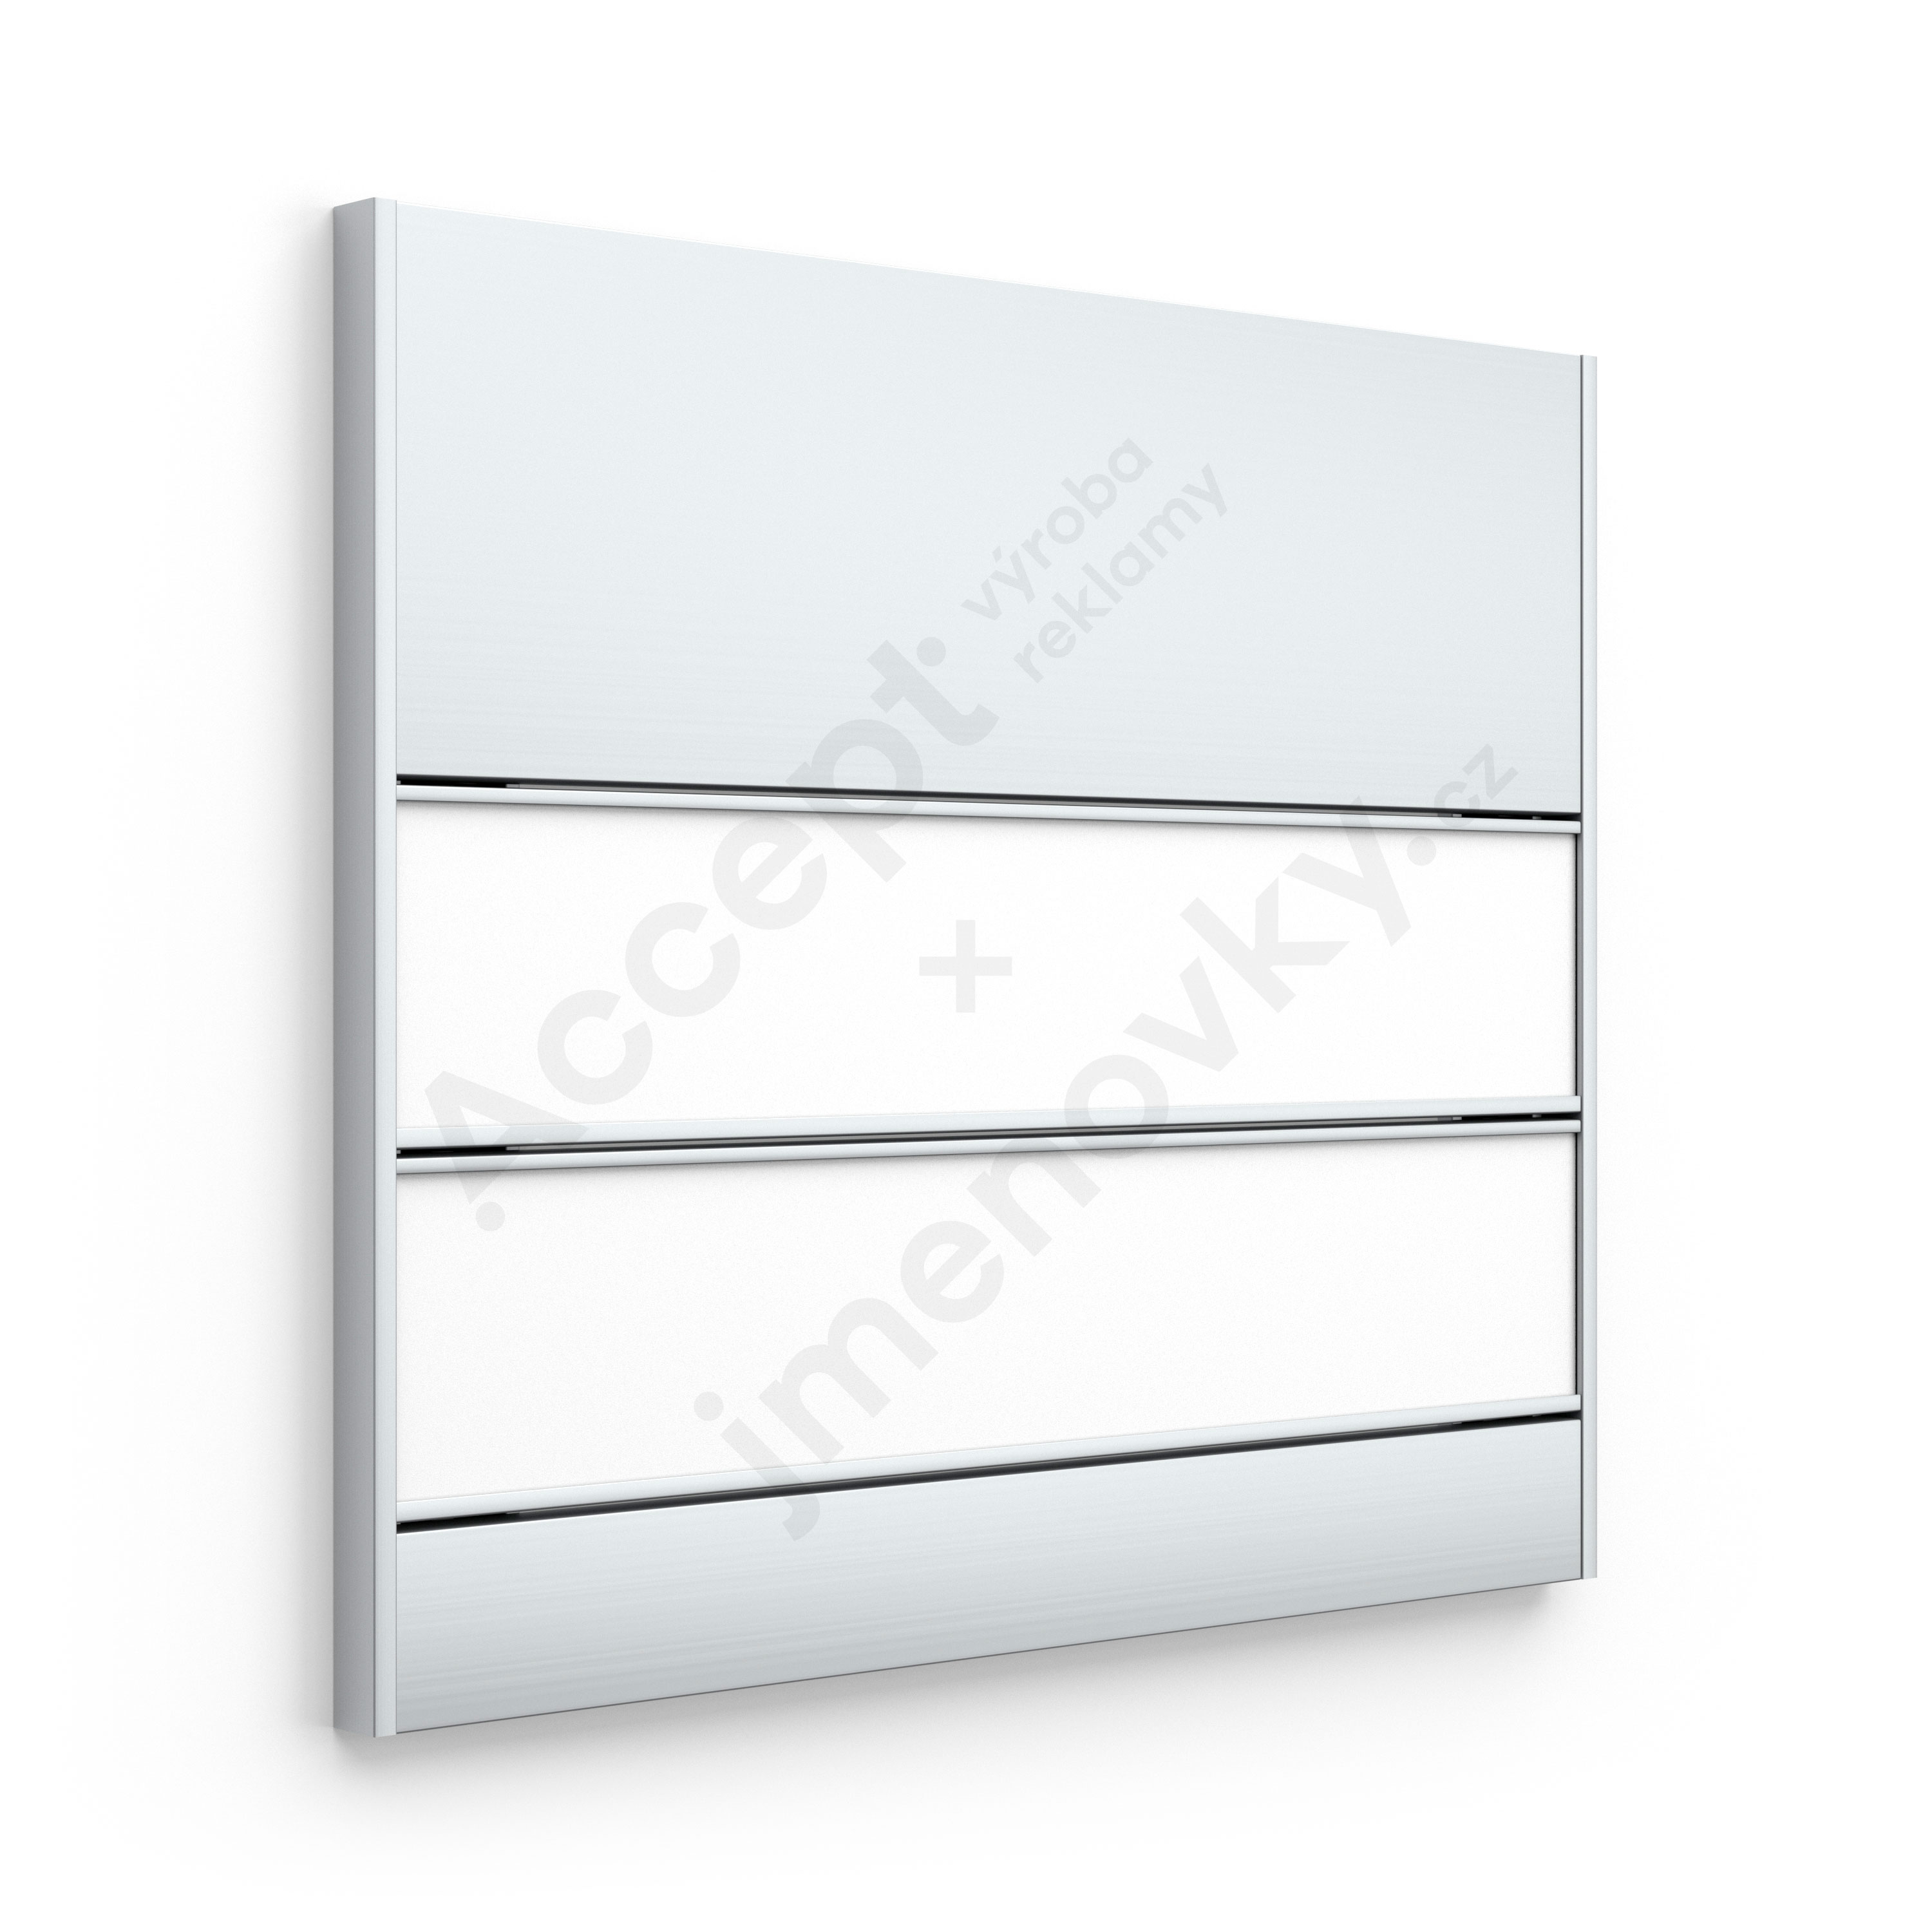 ACCEPT Dveřní tabulka SlimSlatz (zásuvný systém, rovné bočnice, 187 x 165 mm) - stříbrná tabulka